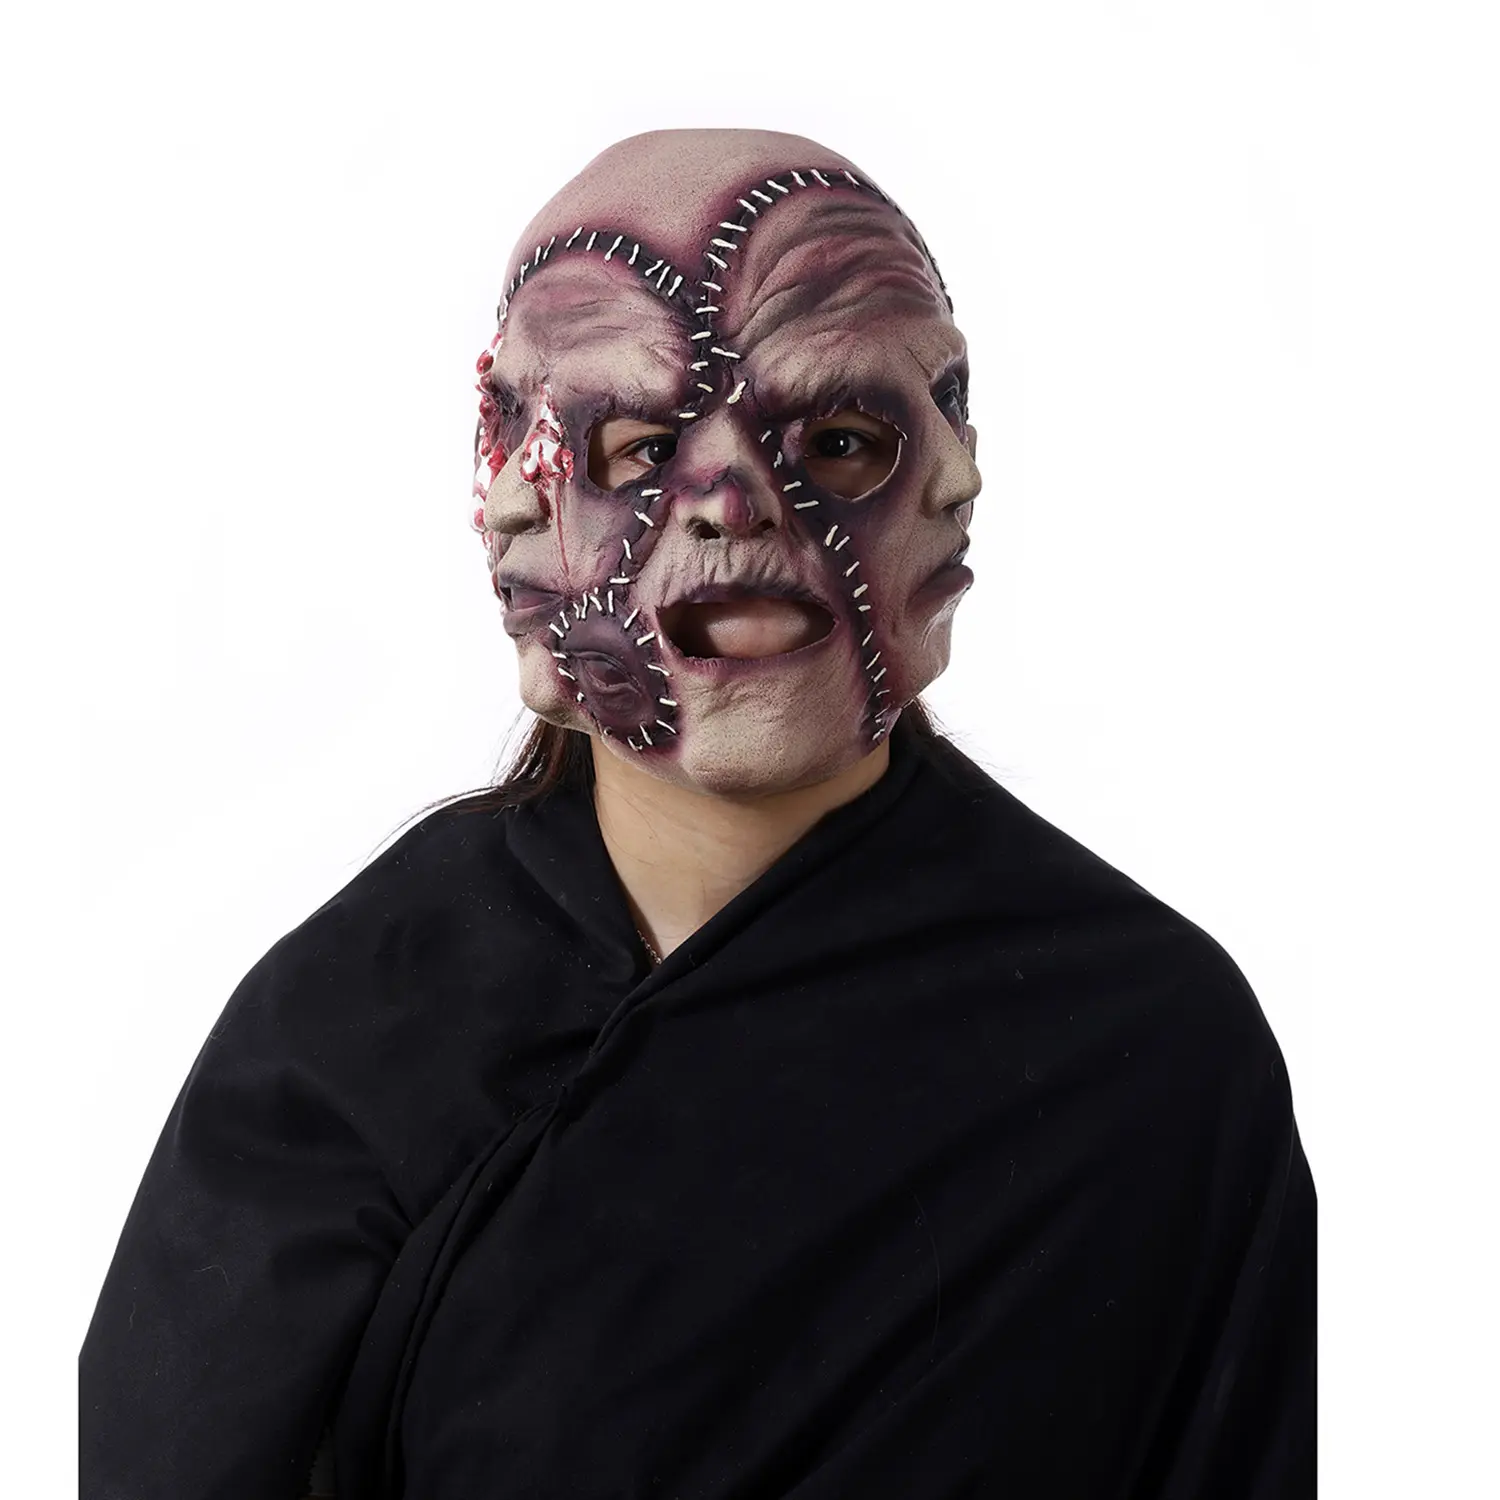 WY neue halloween-maske drei gesichter realistische latex-kopfmaske männer maske party dekorieren